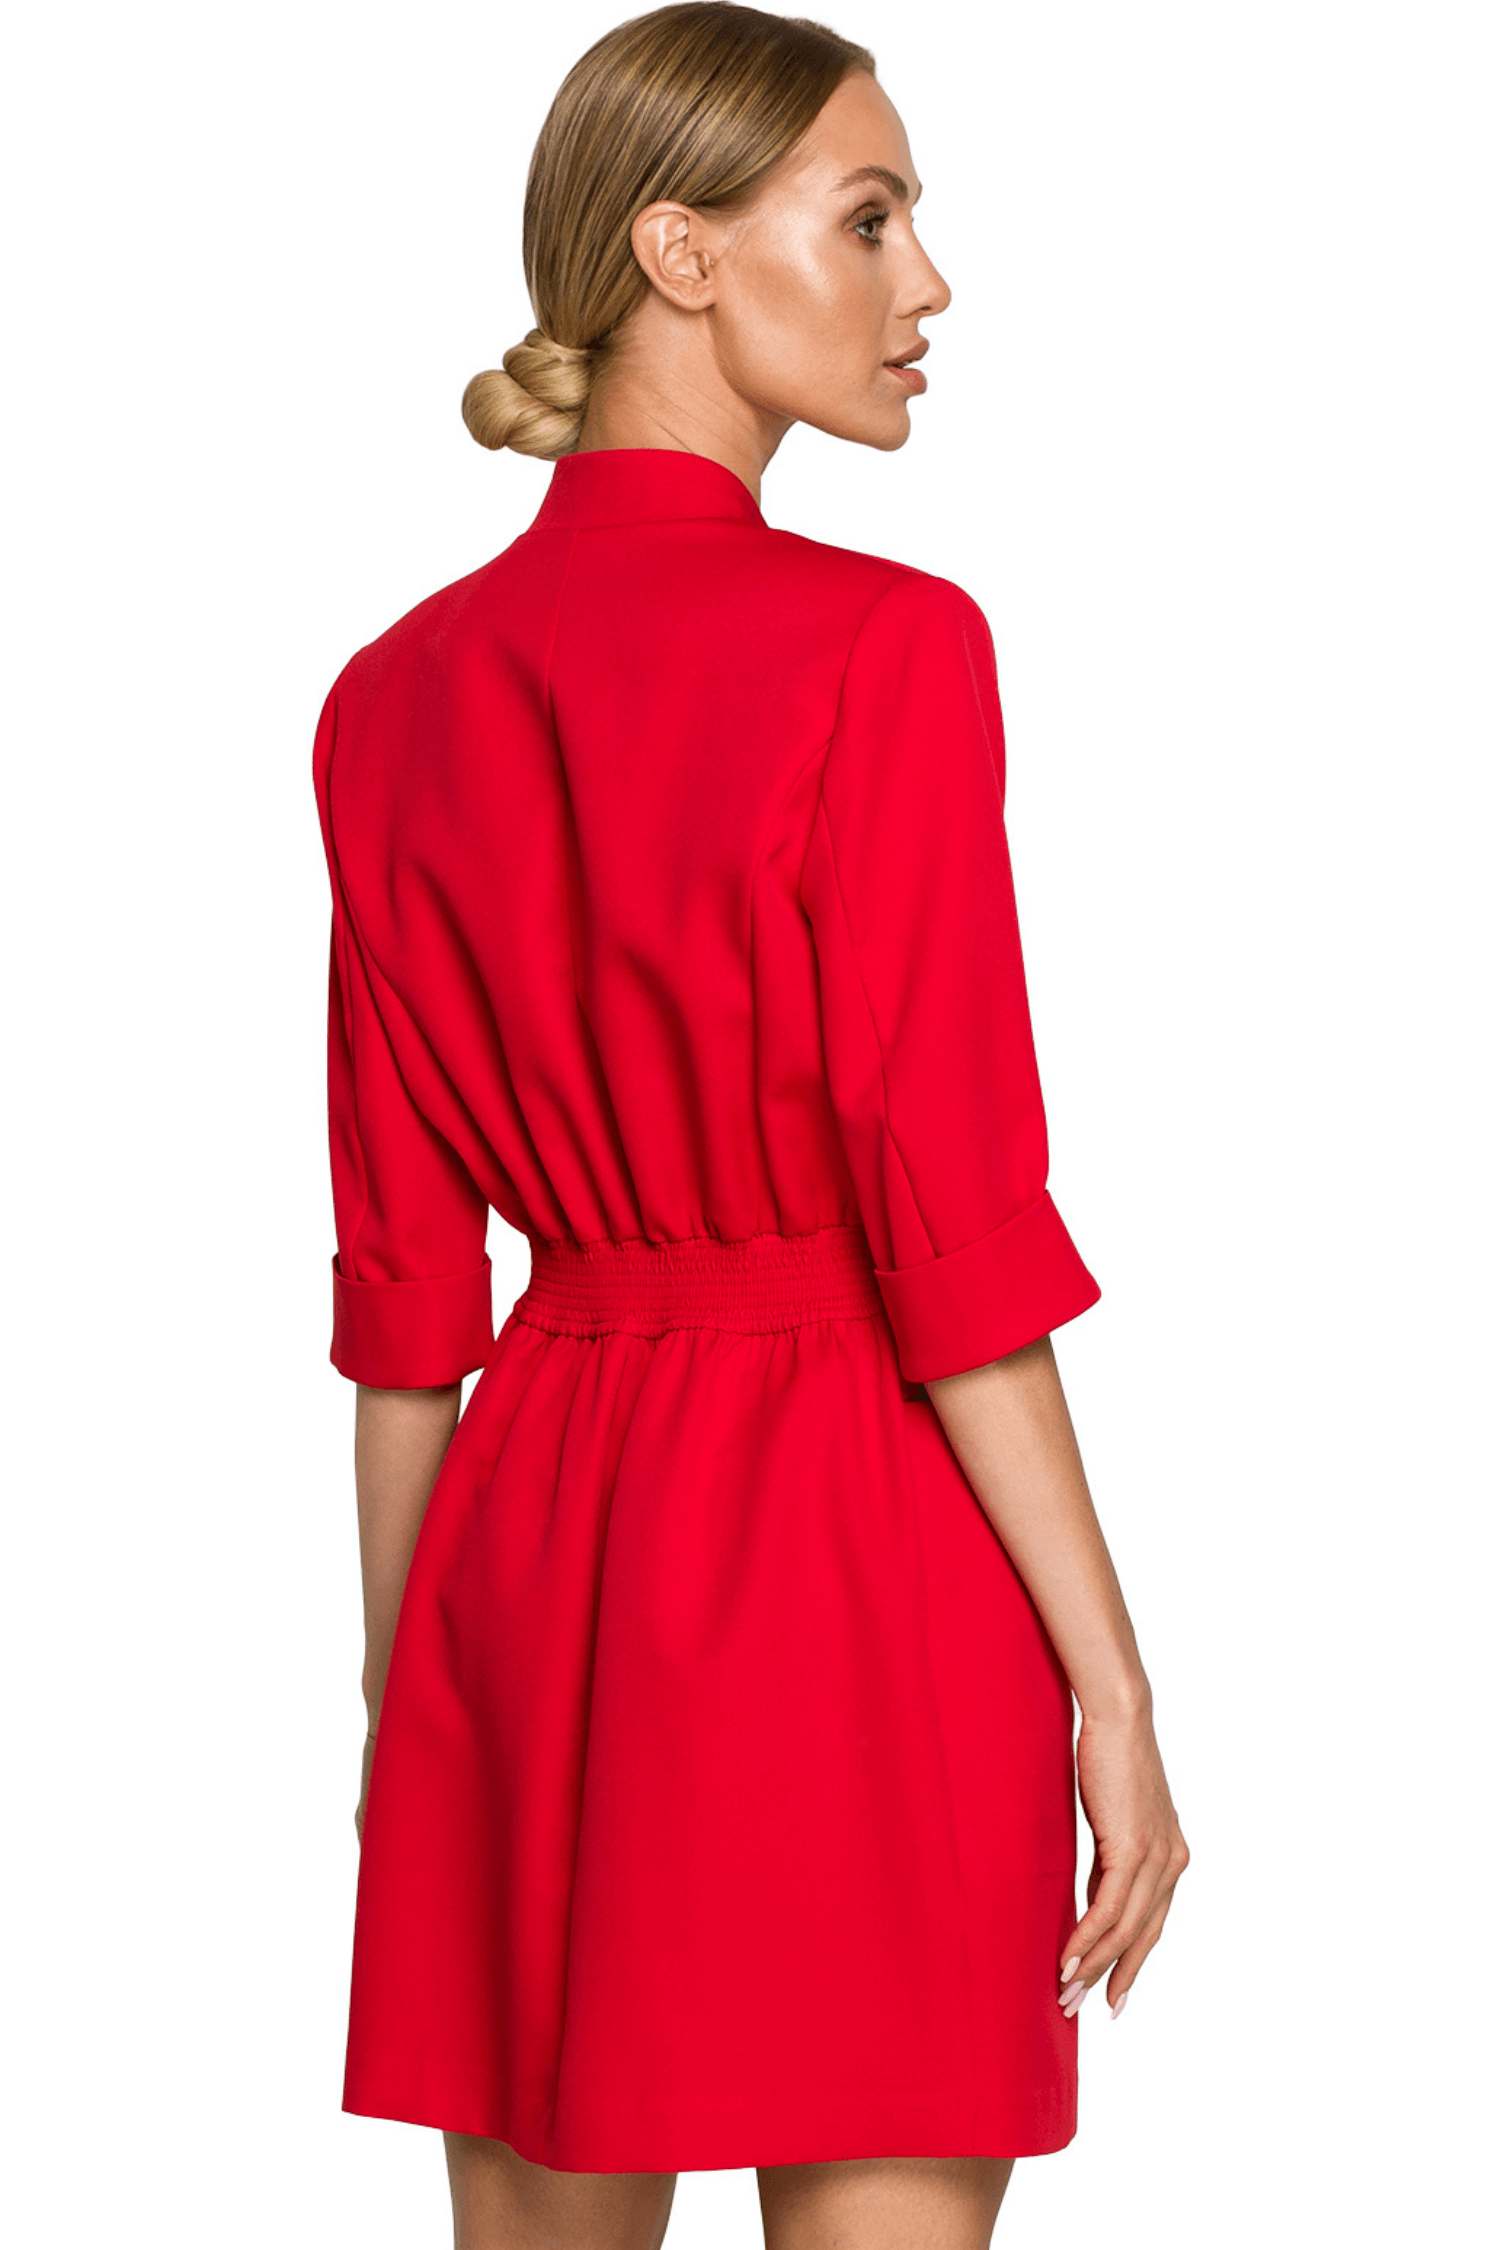 Opis: Elegancka sukienka żakietowa z guzikami i kołnierzem czerwona.